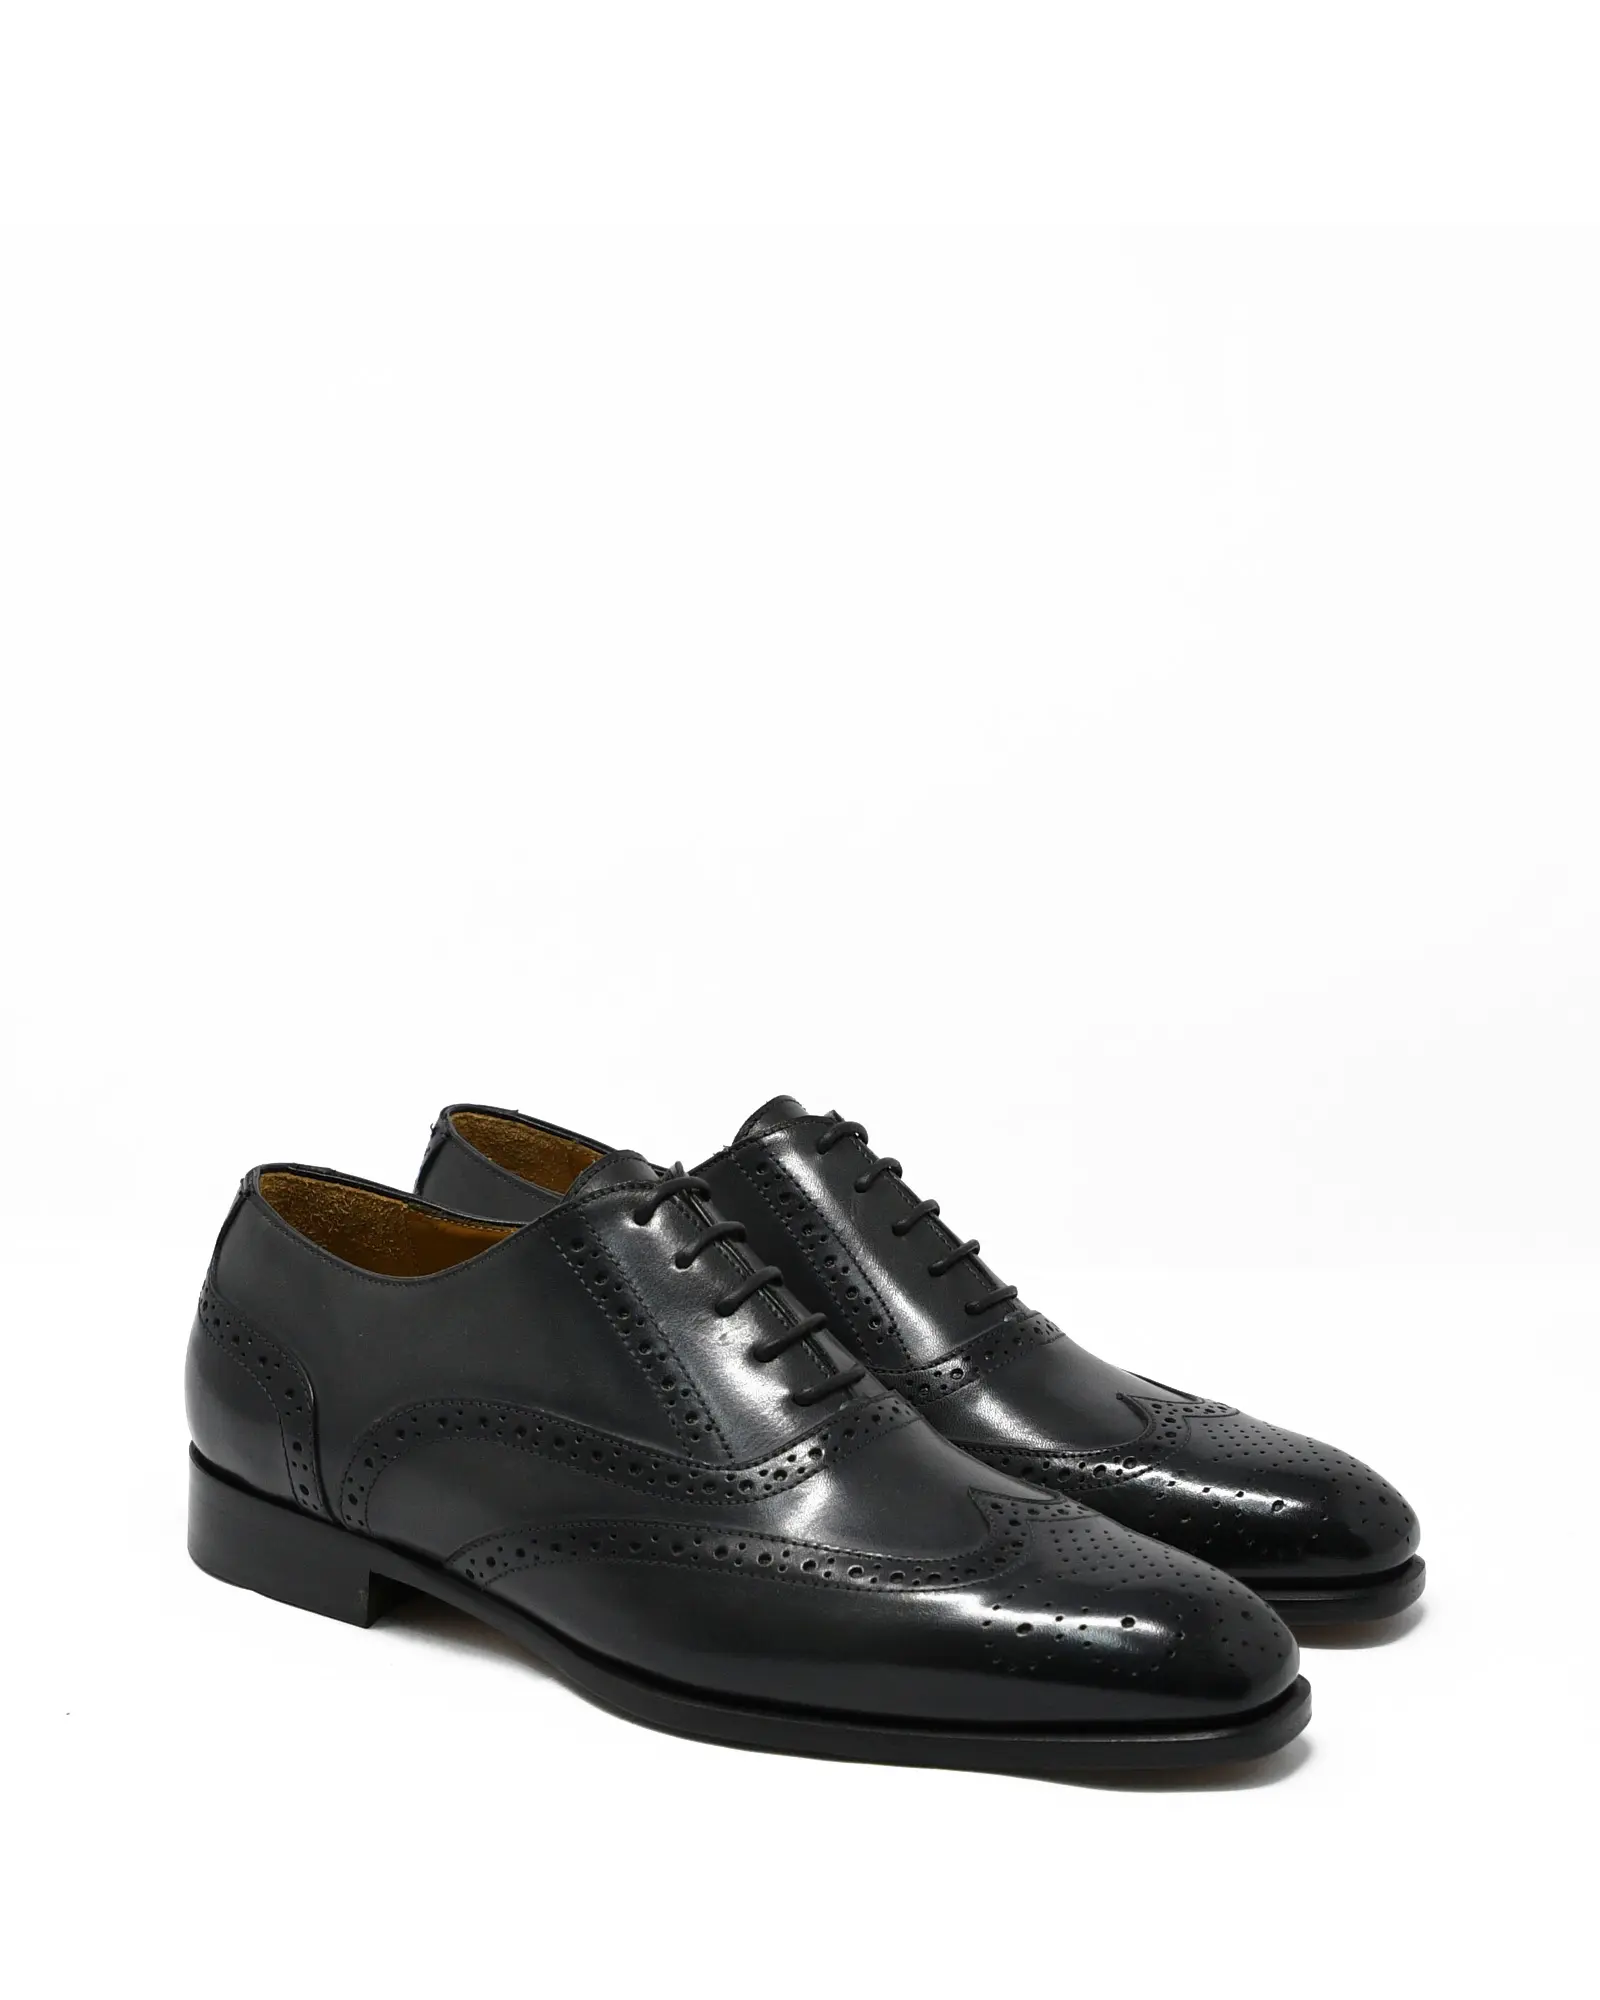 औपचारिक अवसर के लिए पुरुषों के लिए ब्रौज जूते, उत्पादन 100% इटली में हाथ से रंग किया गया है